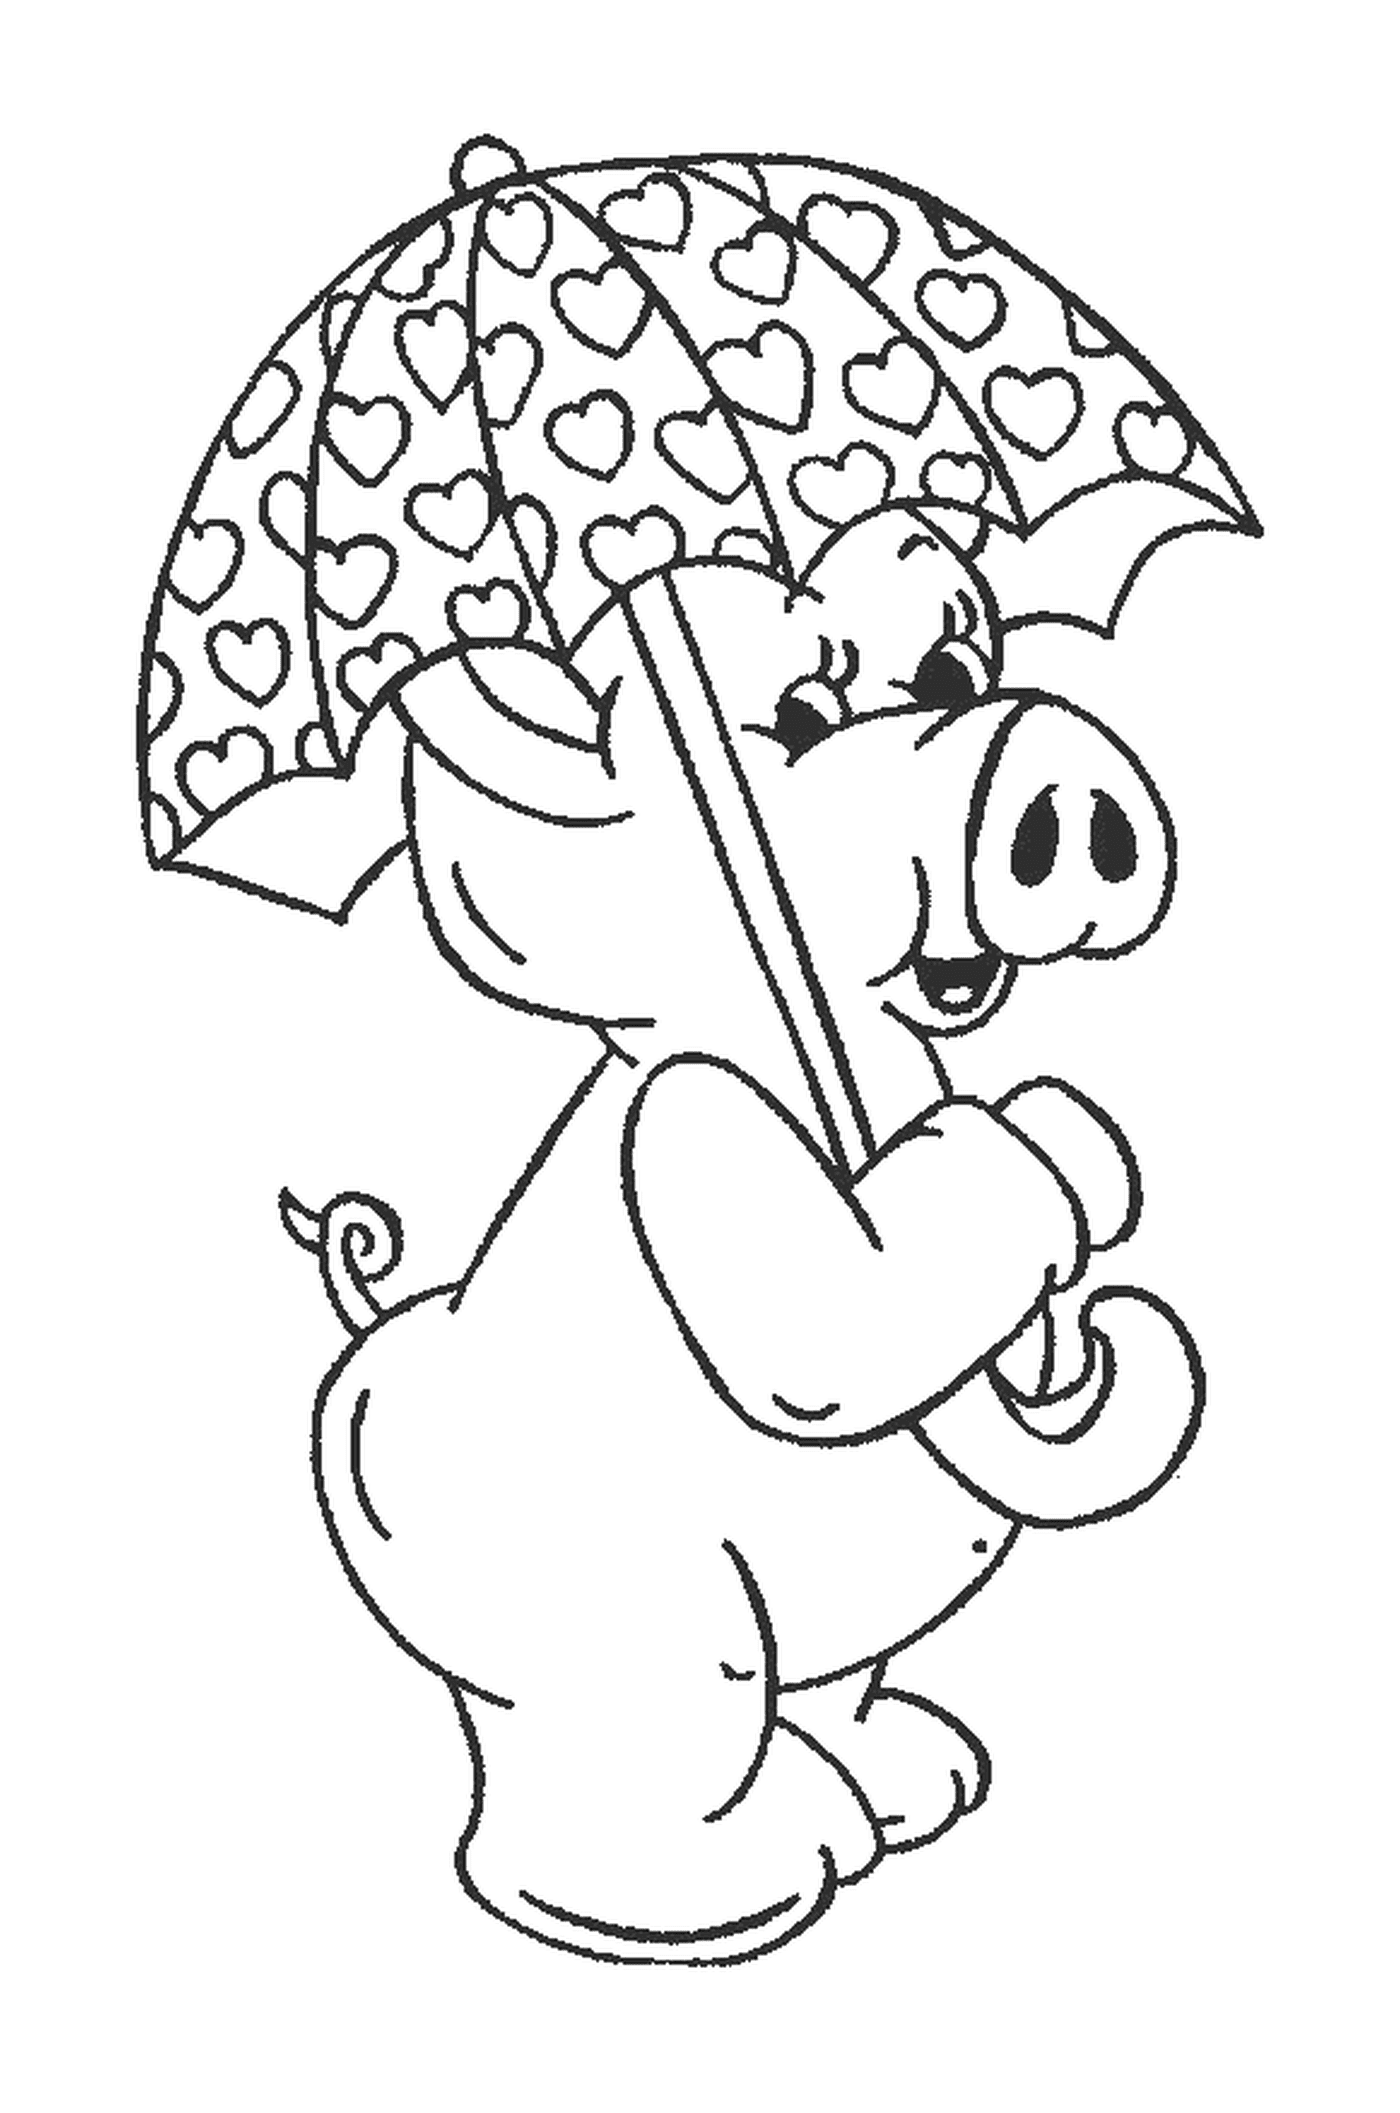  一只嘴里拿着雨伞的猪 